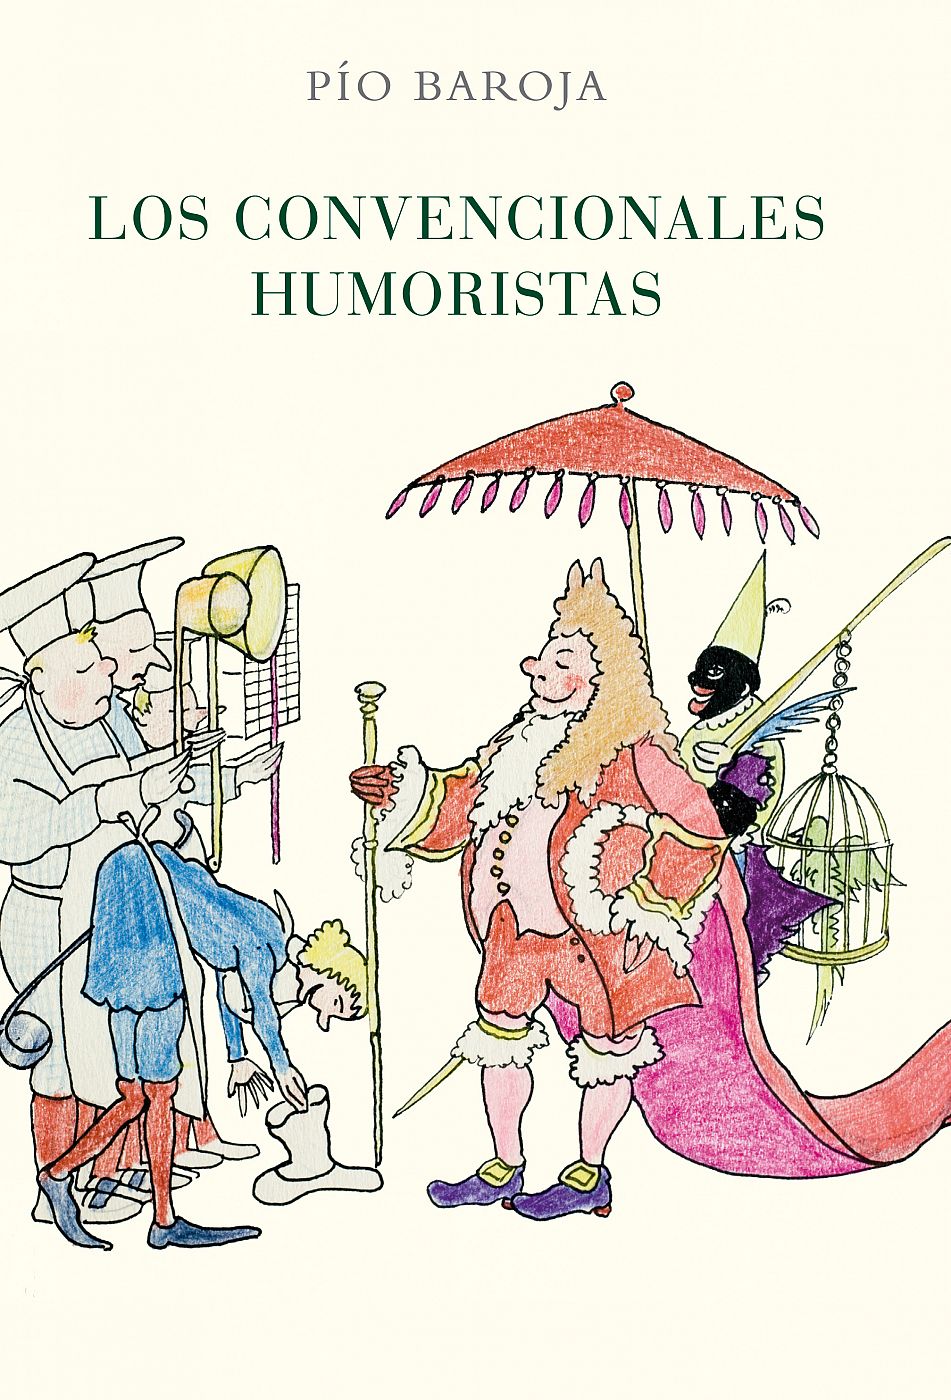 Portada del libro publicado en 2011 por Caro Raggio y que contiene dos sainetes de Pío Baroja: 'Los convencionales humoristas' y  'Arlequín, mancebo de botica'.